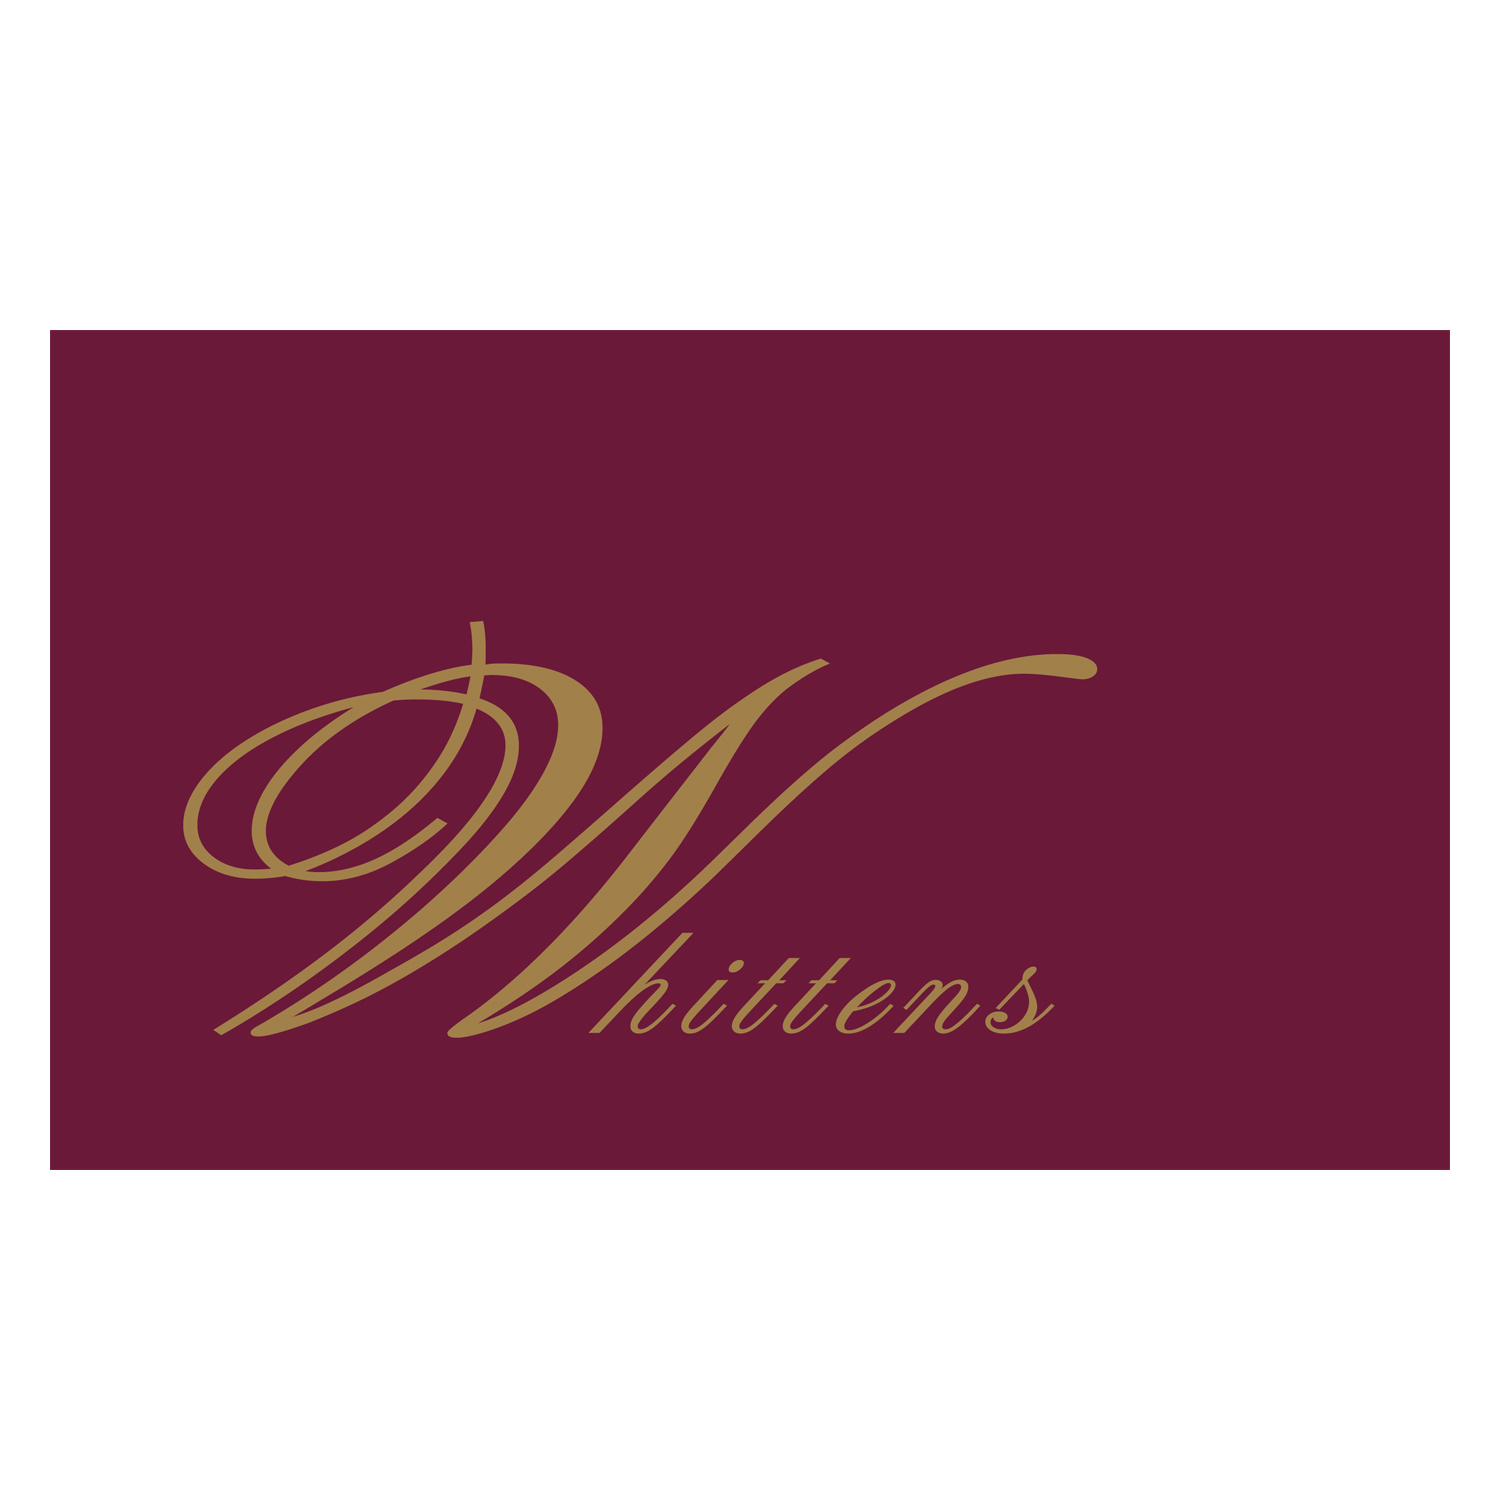 Whittens Logo.jpg